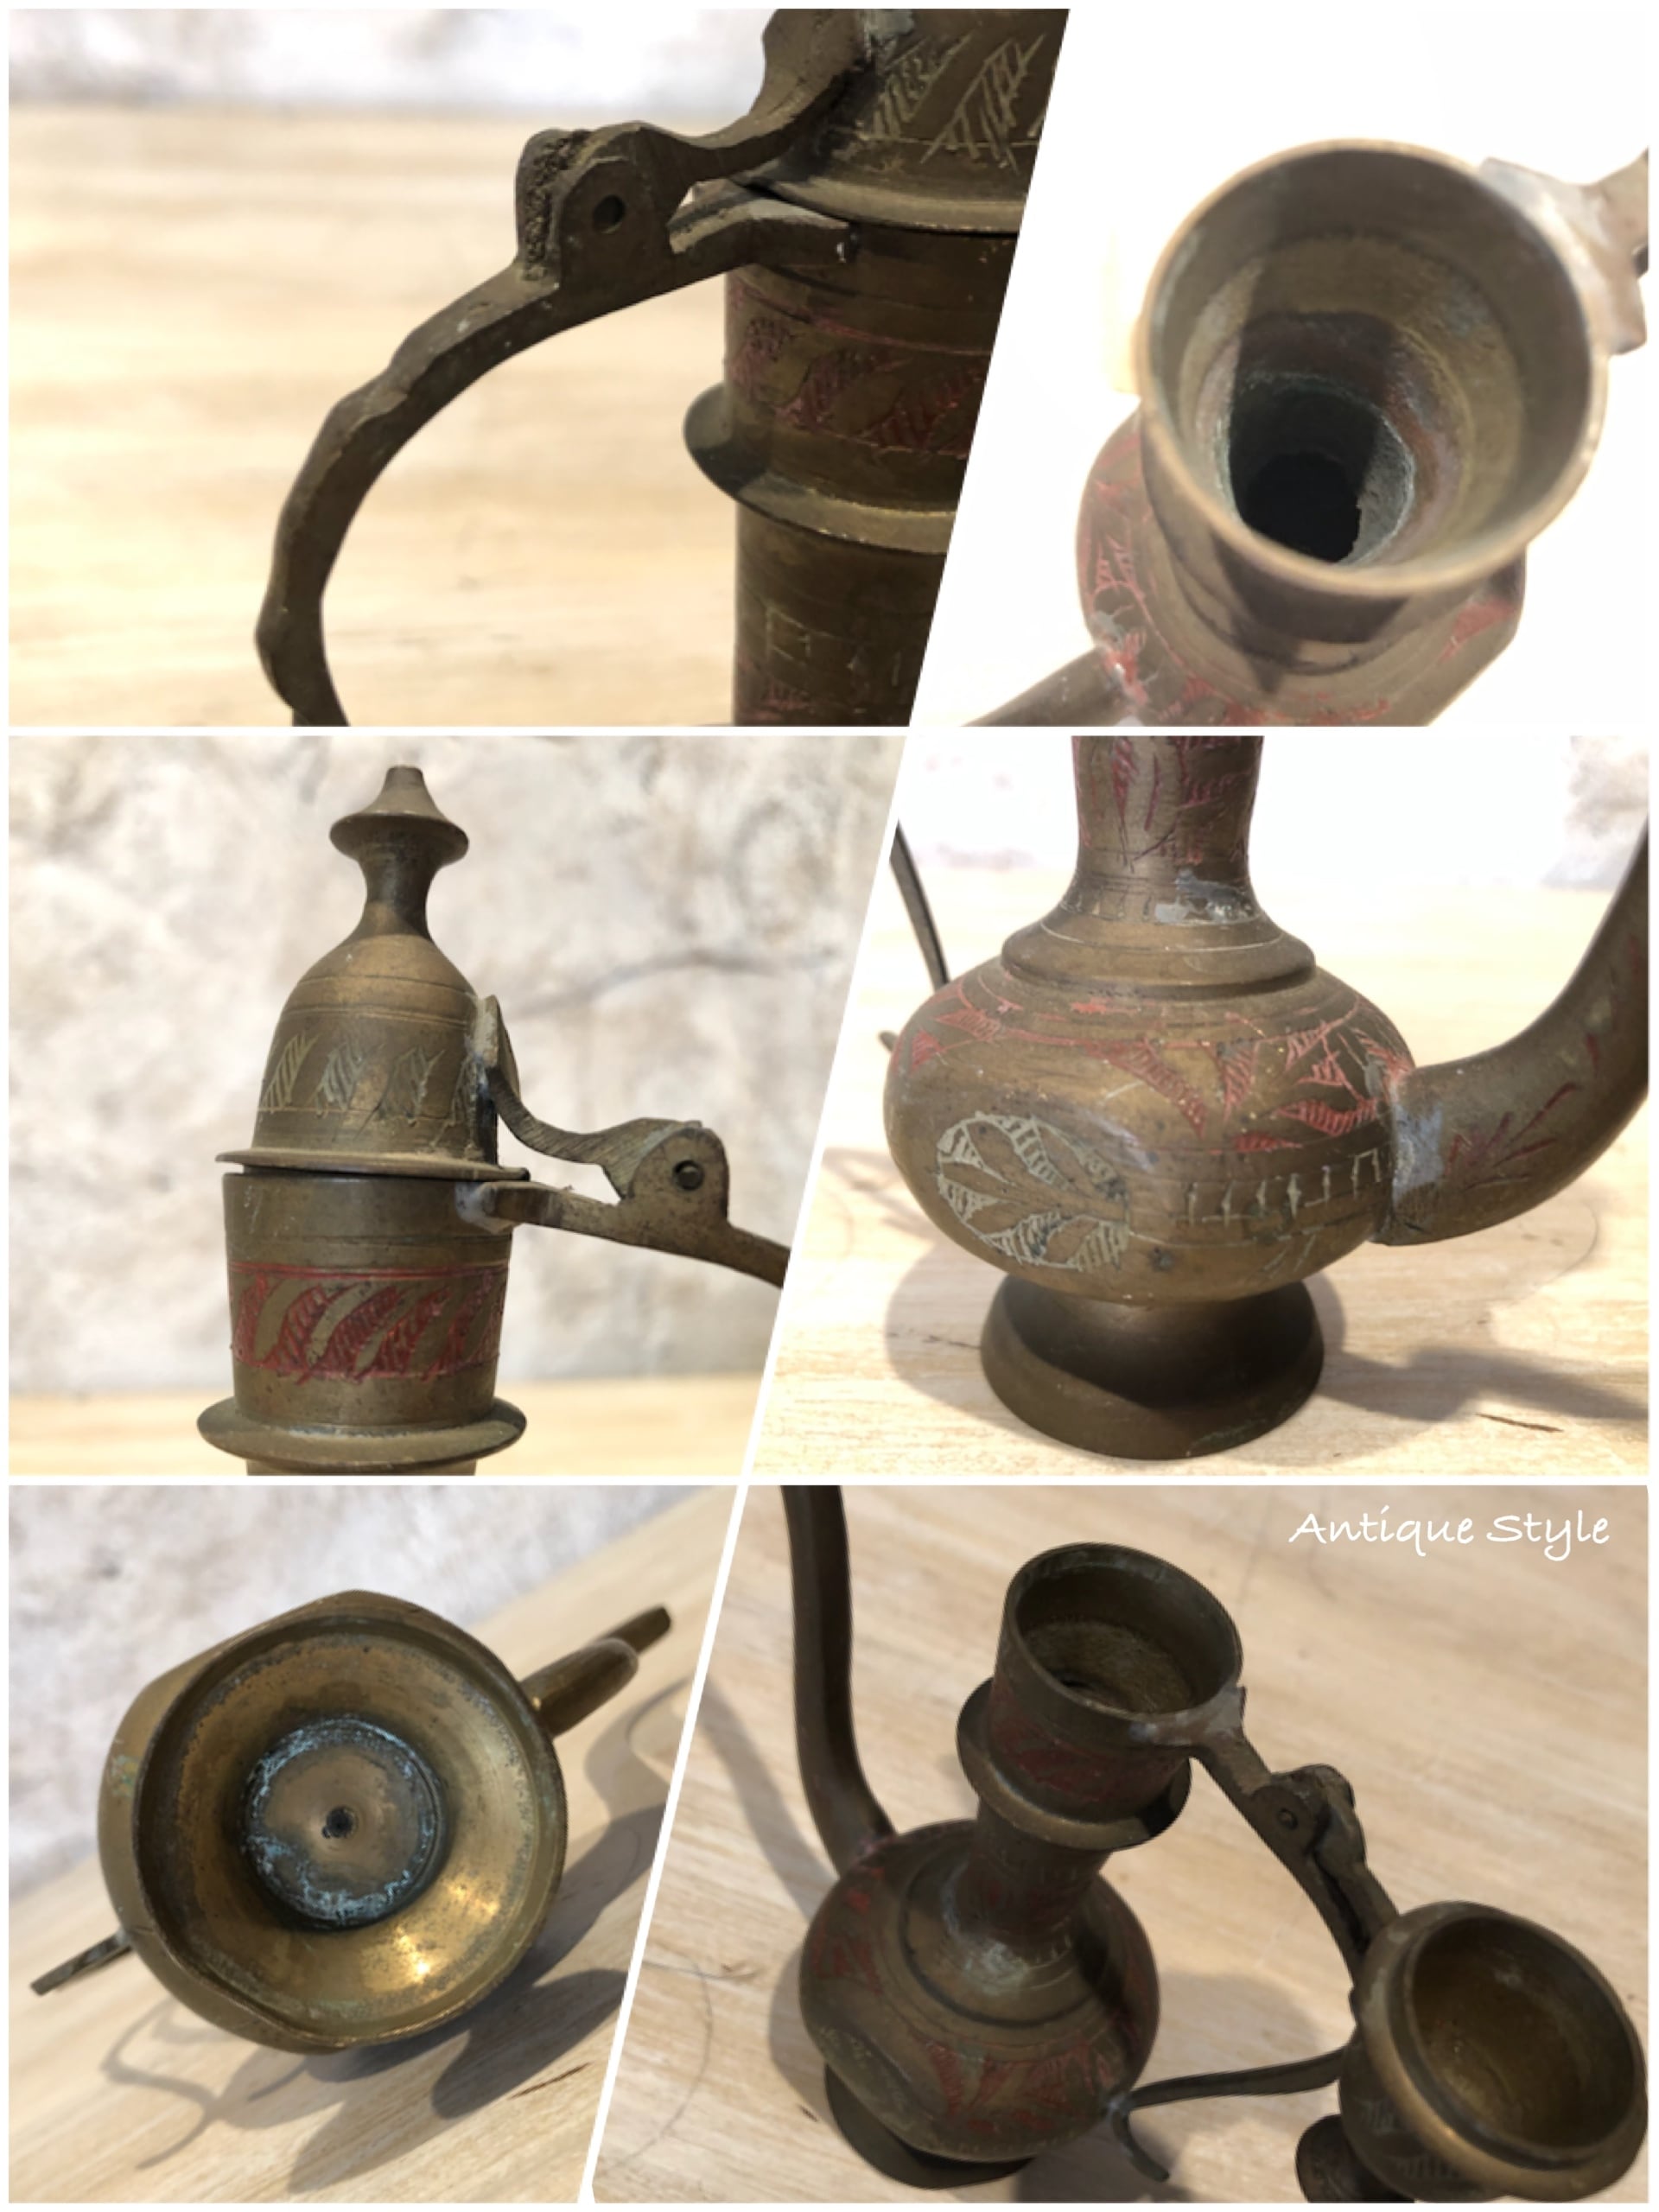 インド製 1920-30's アンティーク ブラス 極彩模様 真鍮 水差し 魔法